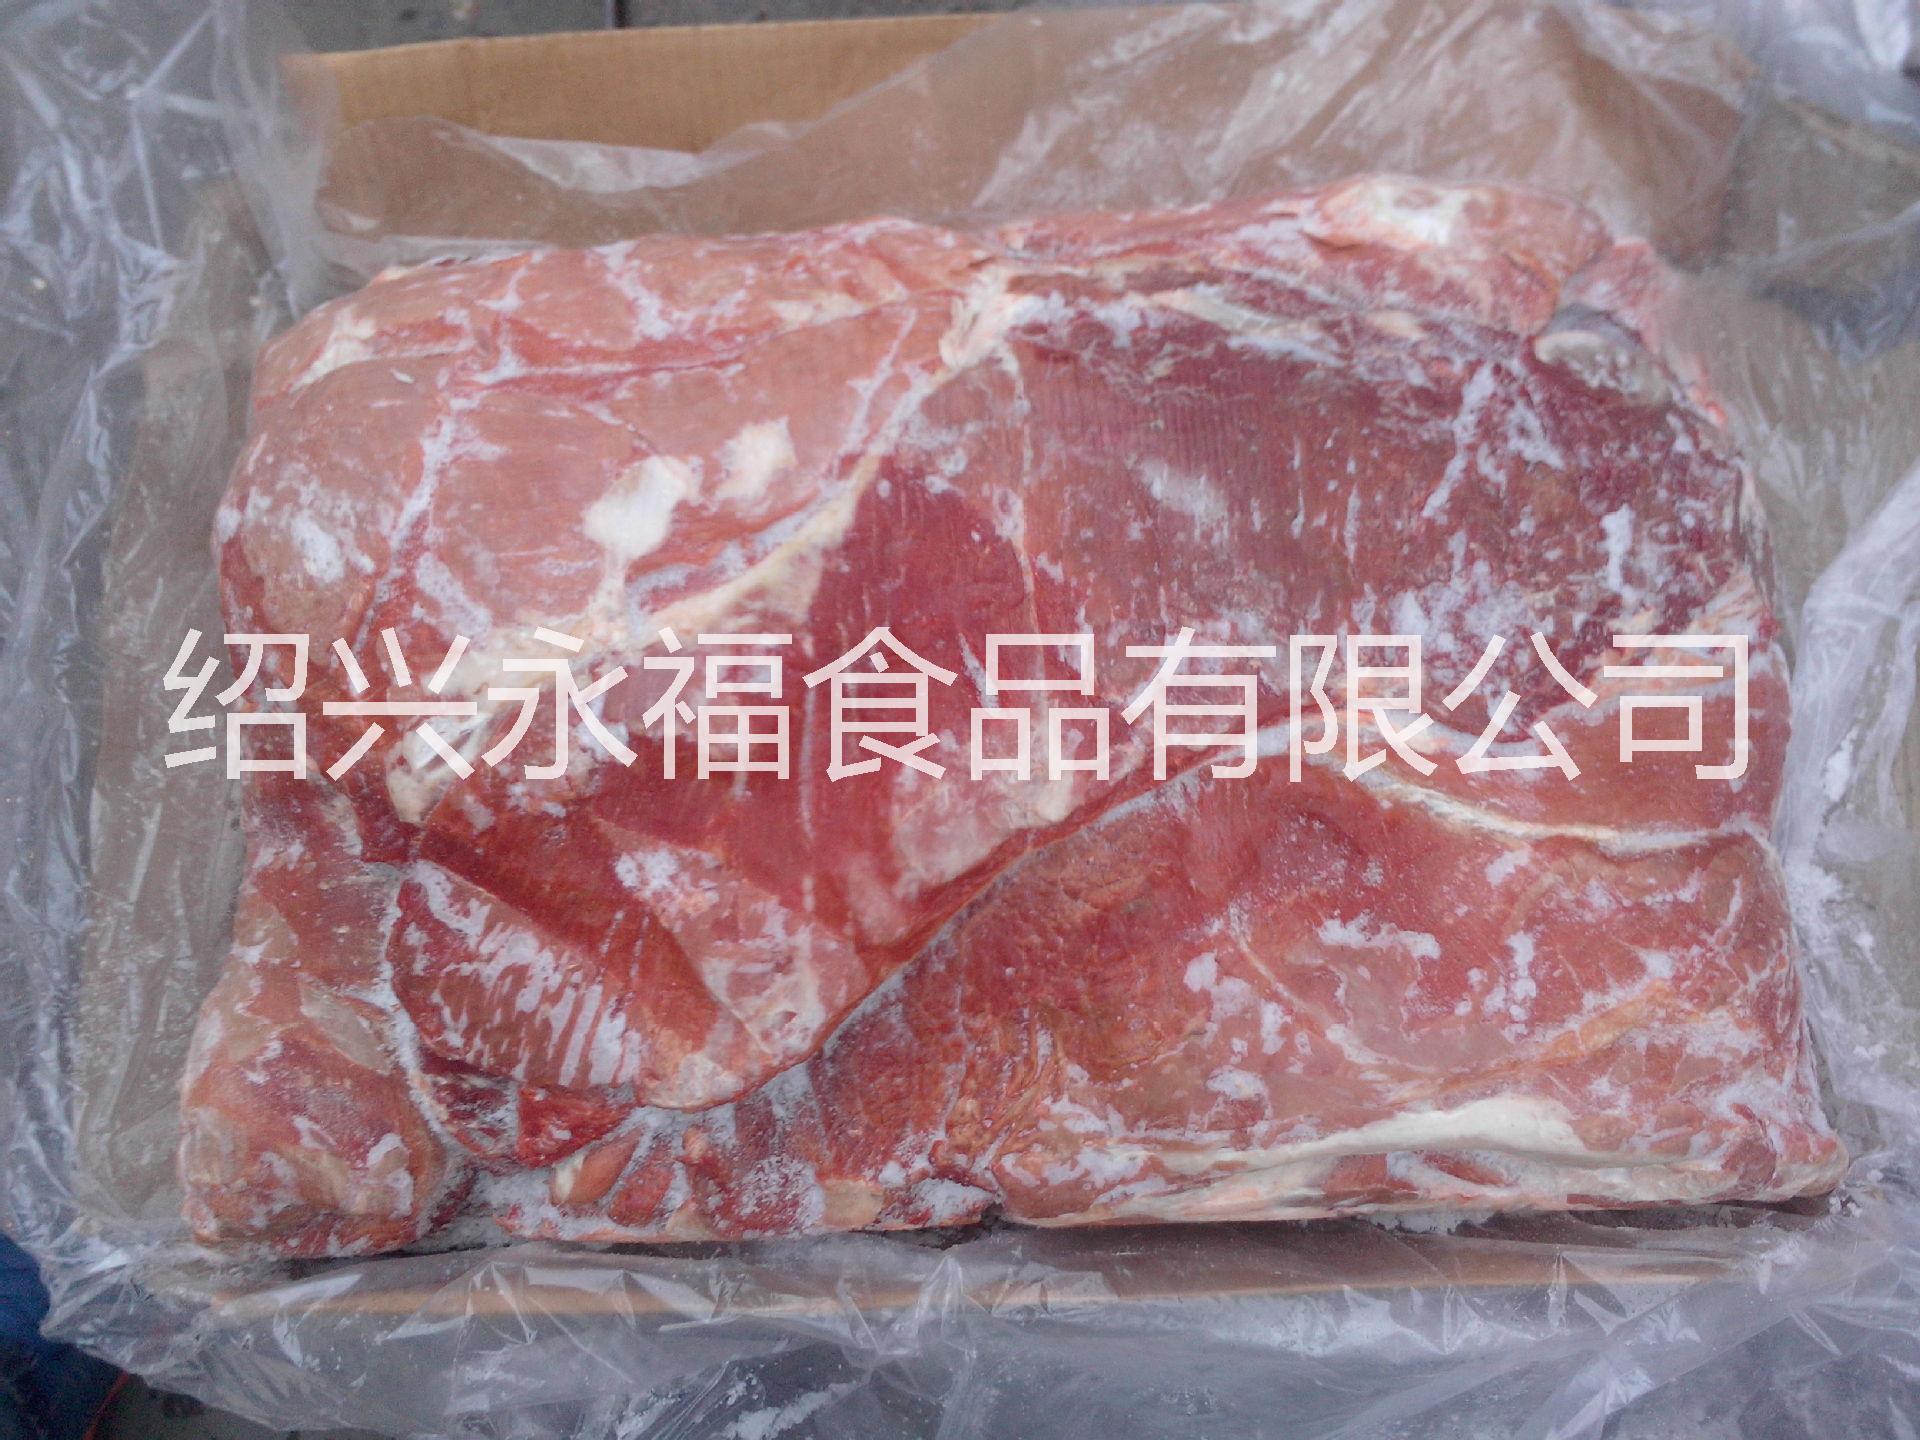 供应用于批发的冷冻牛肉 进口牛肉批发 冷冻牛肉批发价格 冷冻牛肉批发厂家 进口牛副产品批发厂家